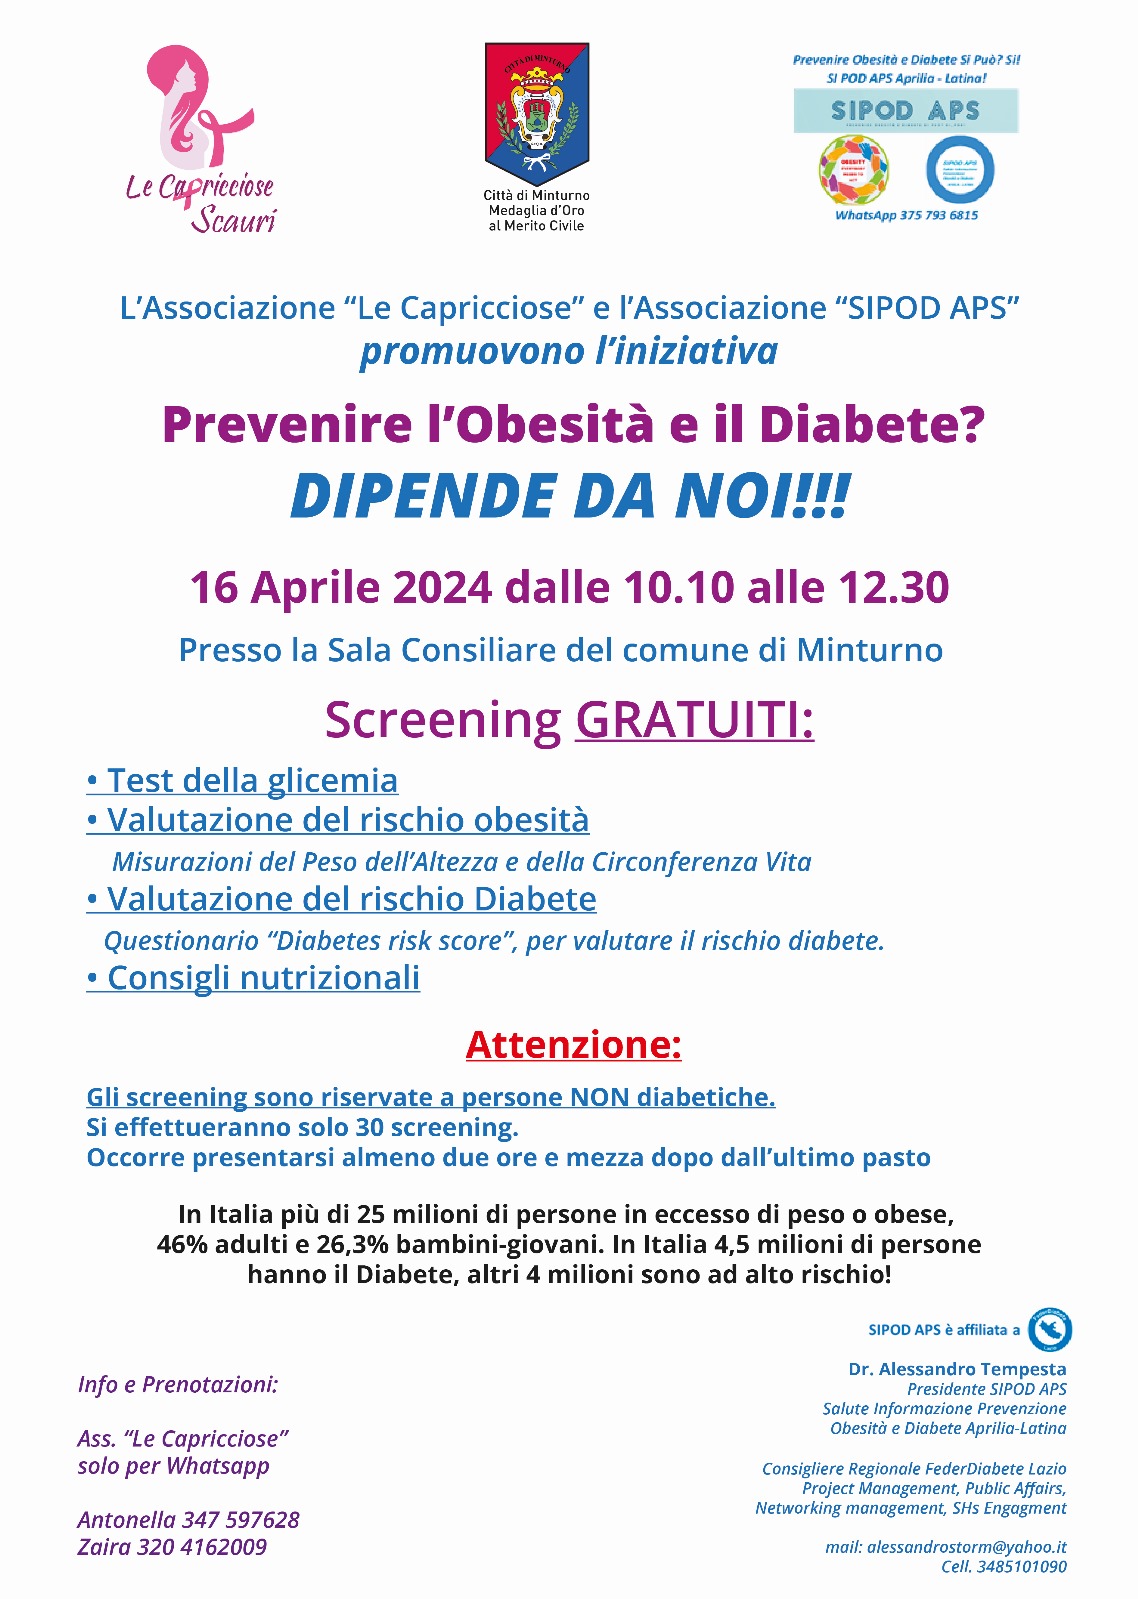 "Prevenire l'obesità e il diabete" martedì 16 aprile, dalle ore 10:00 alle 12 e 30, presso la Sala Consiliare del Comune di Minturno